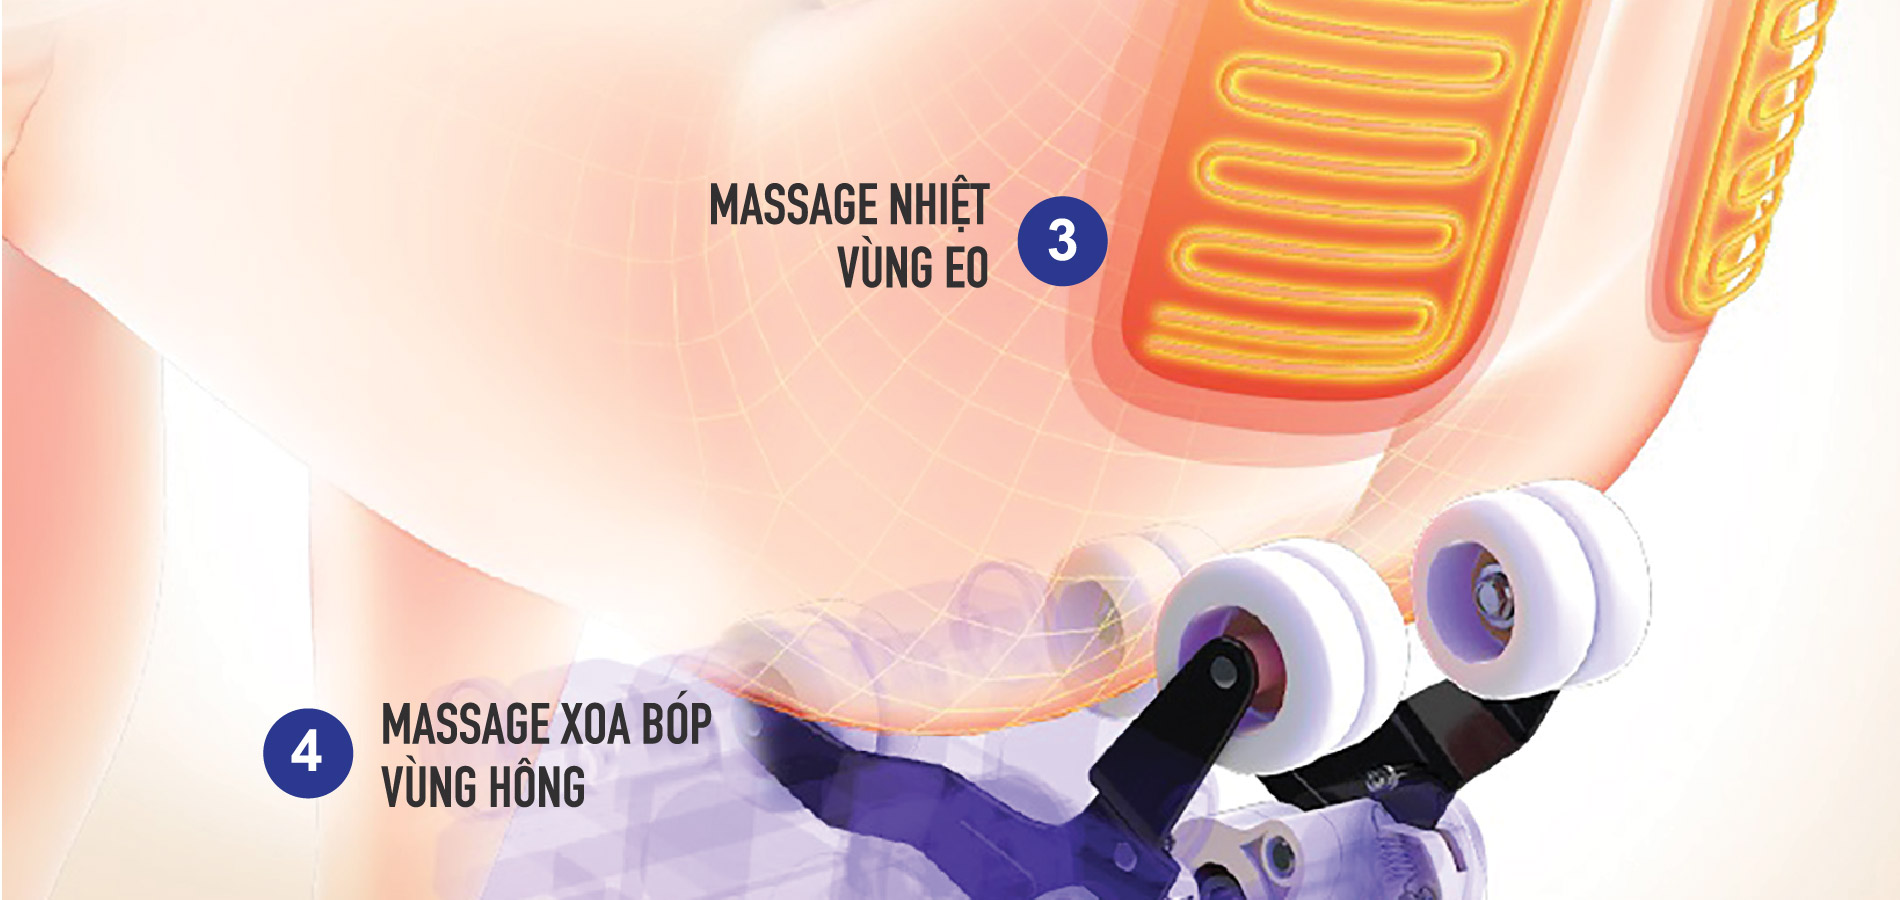 Chế độ massage nhiệt hồng ngoại được nhiều khách hàng lựa chọn khi sử dụng ghế massage